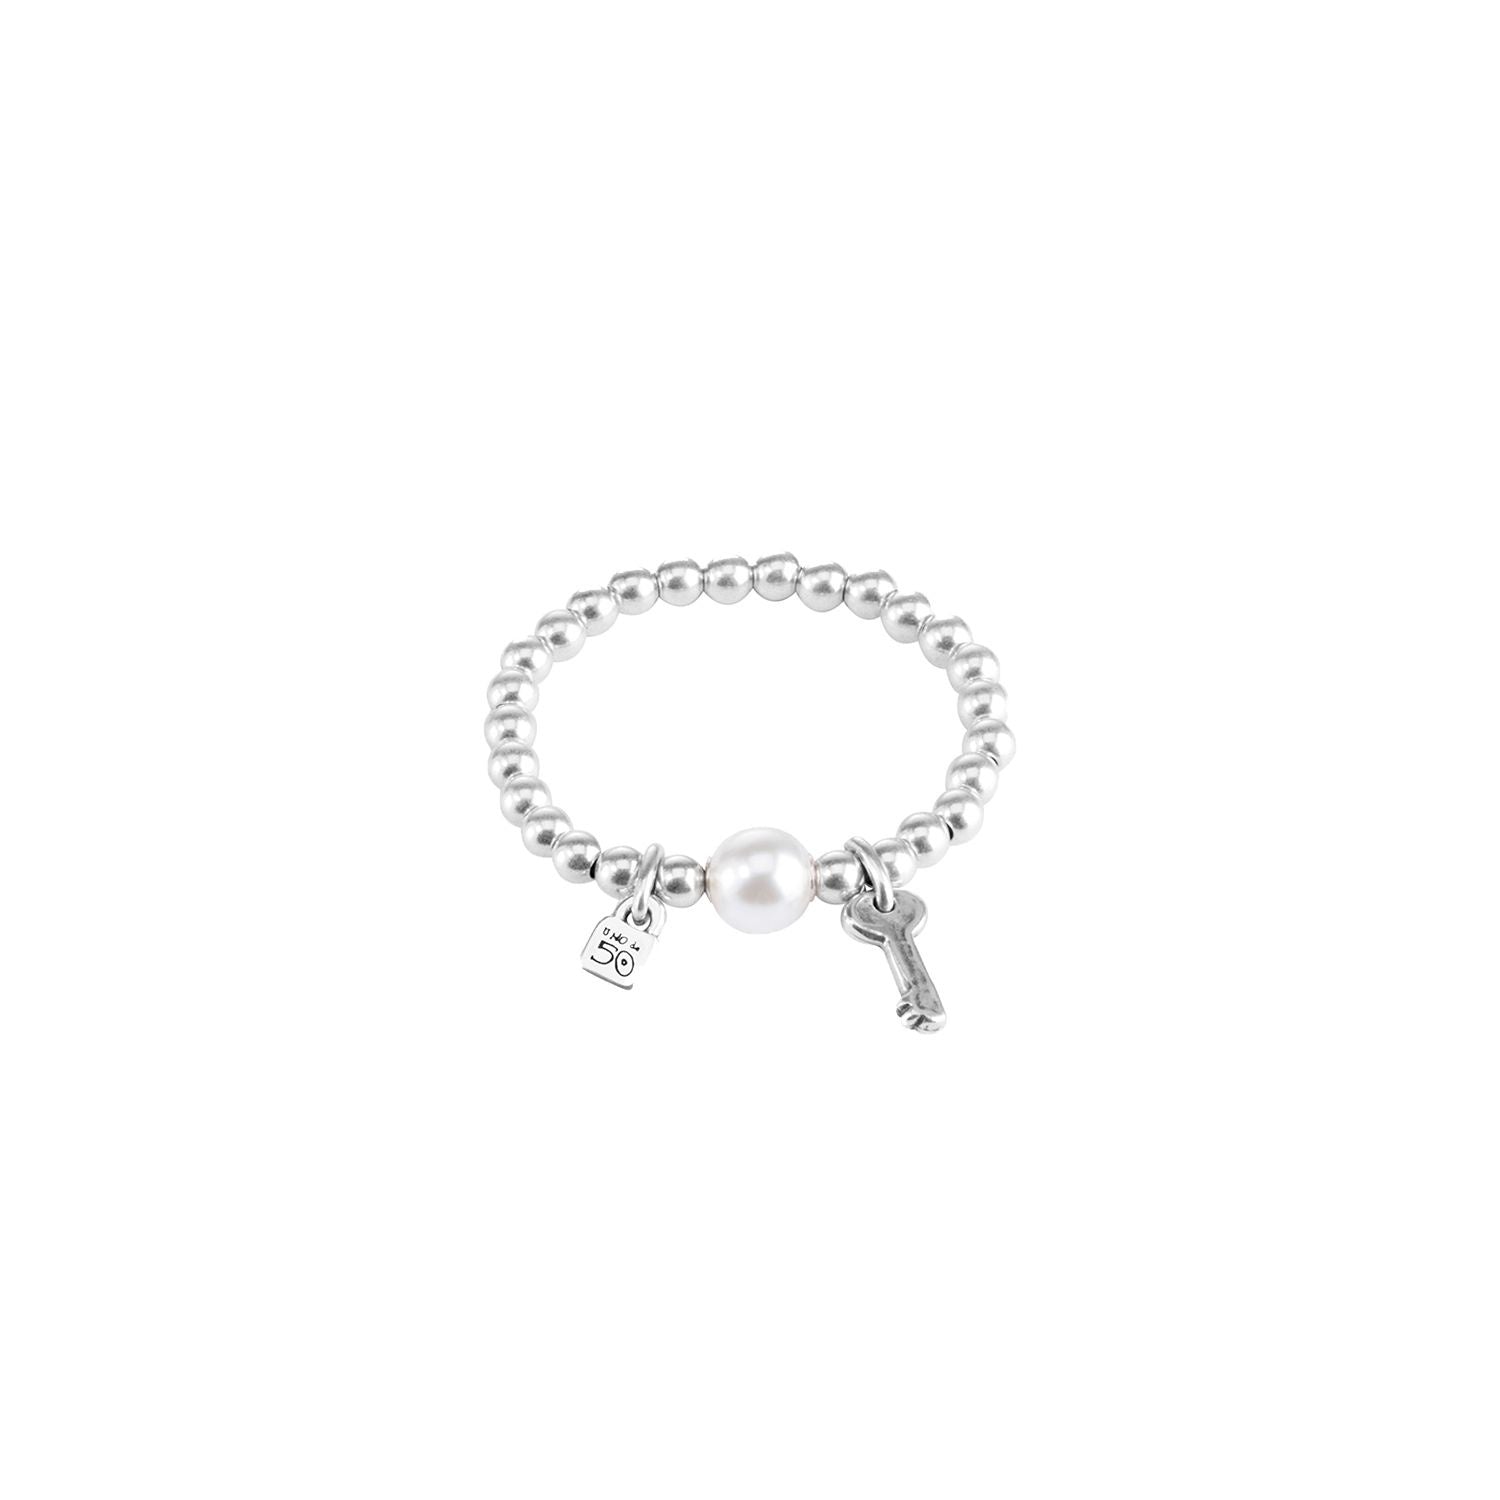 Matching Heart Key Necklace & Lock Bracelet Jewelry Set for Couples –  GardeniaJewel